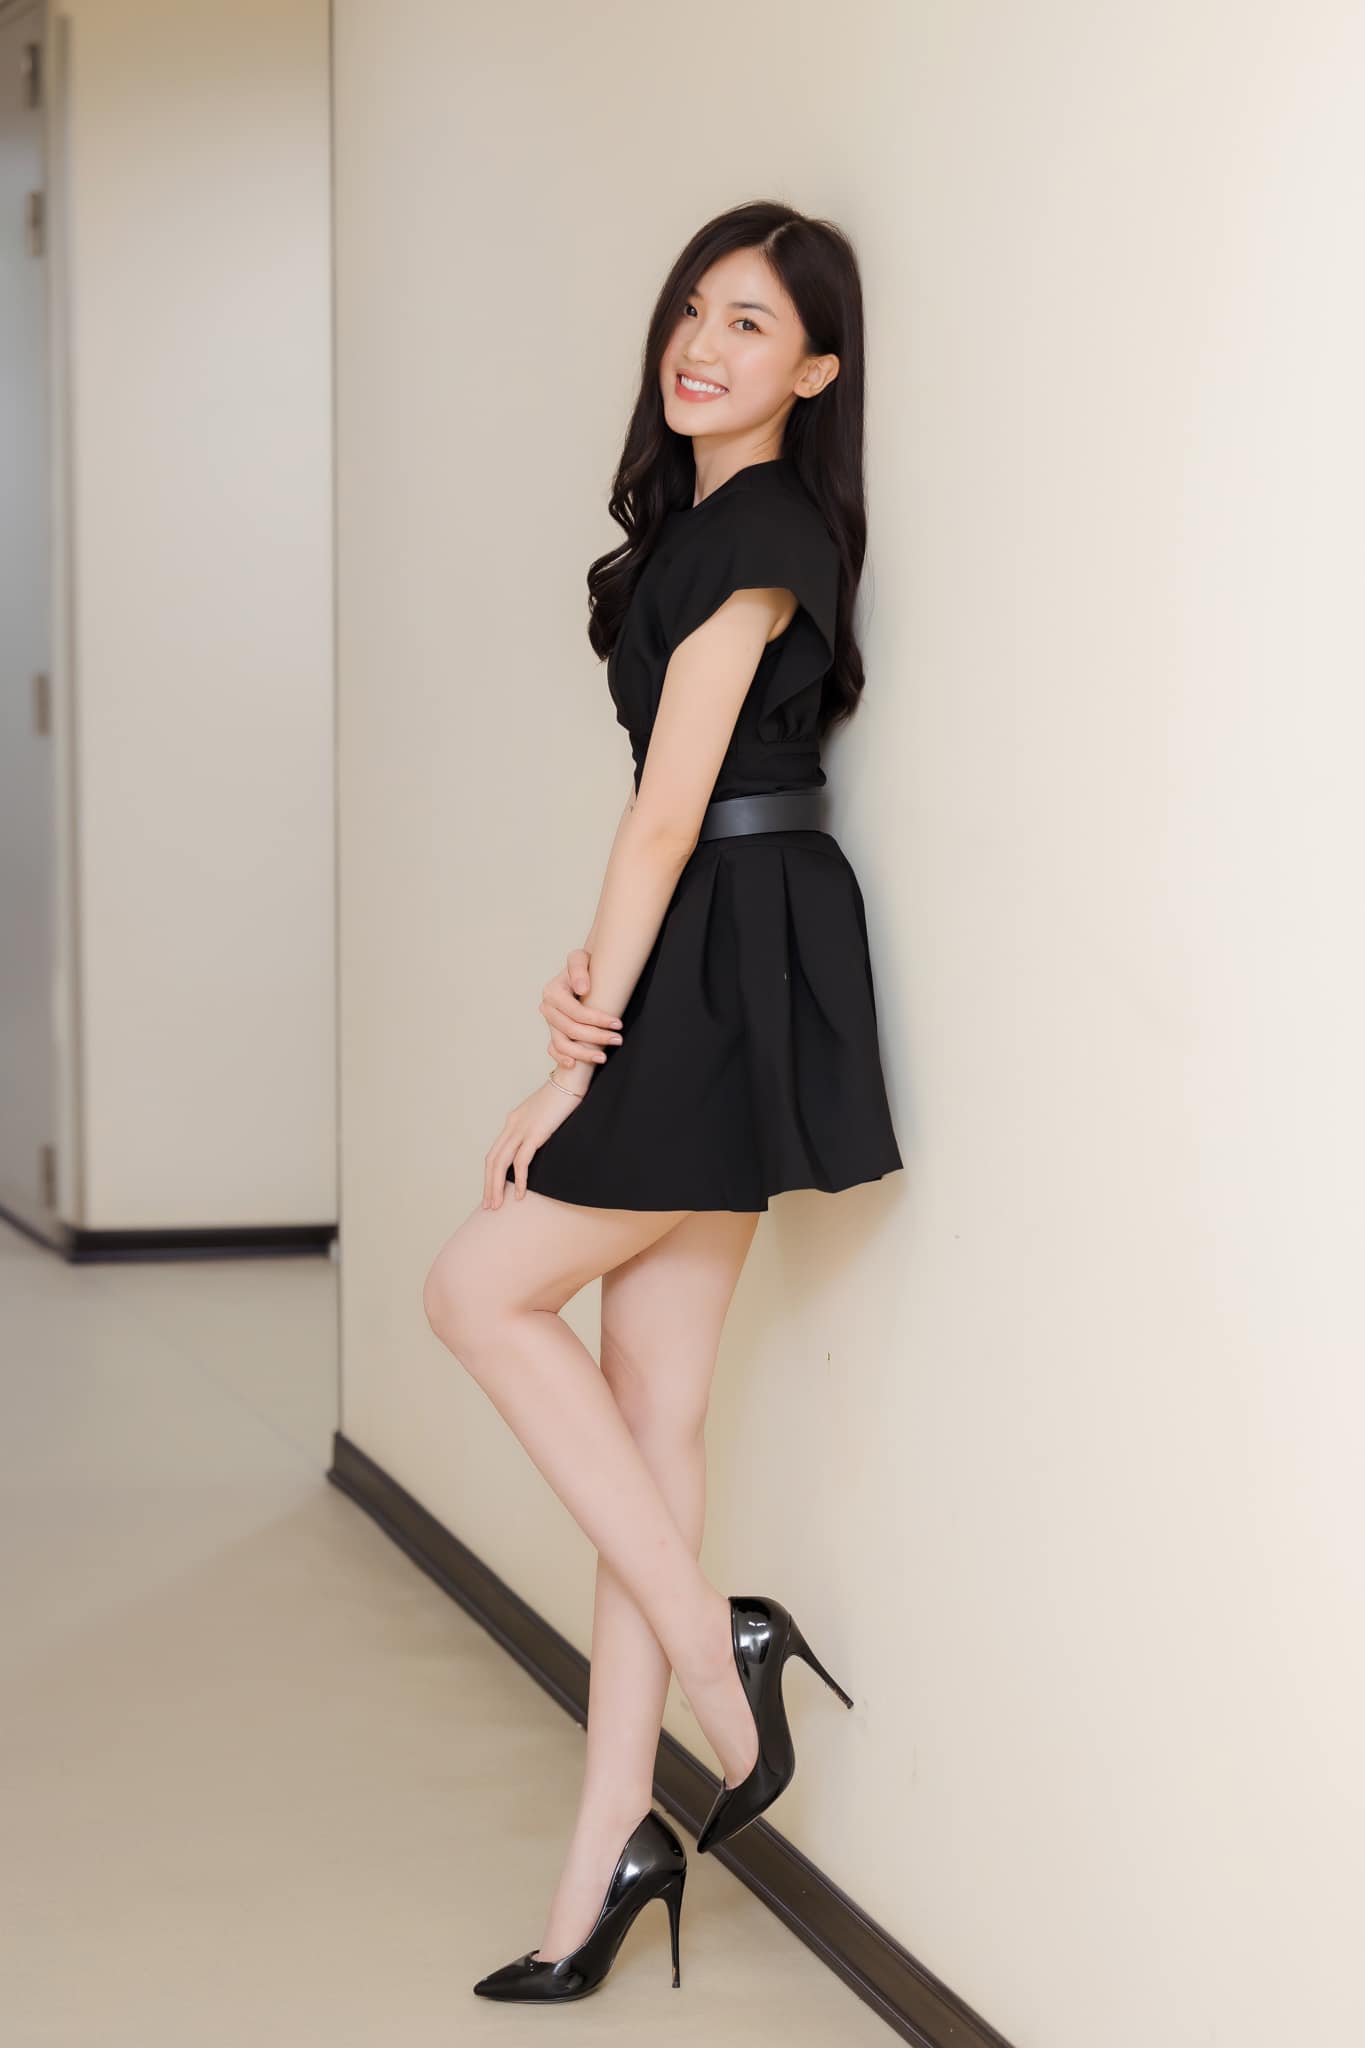 Nữ diễn viên quê Thanh Hóa mặt xinh, dáng đẹp cao hơn 1m70 chẳng thua kém hoa hậu - 11